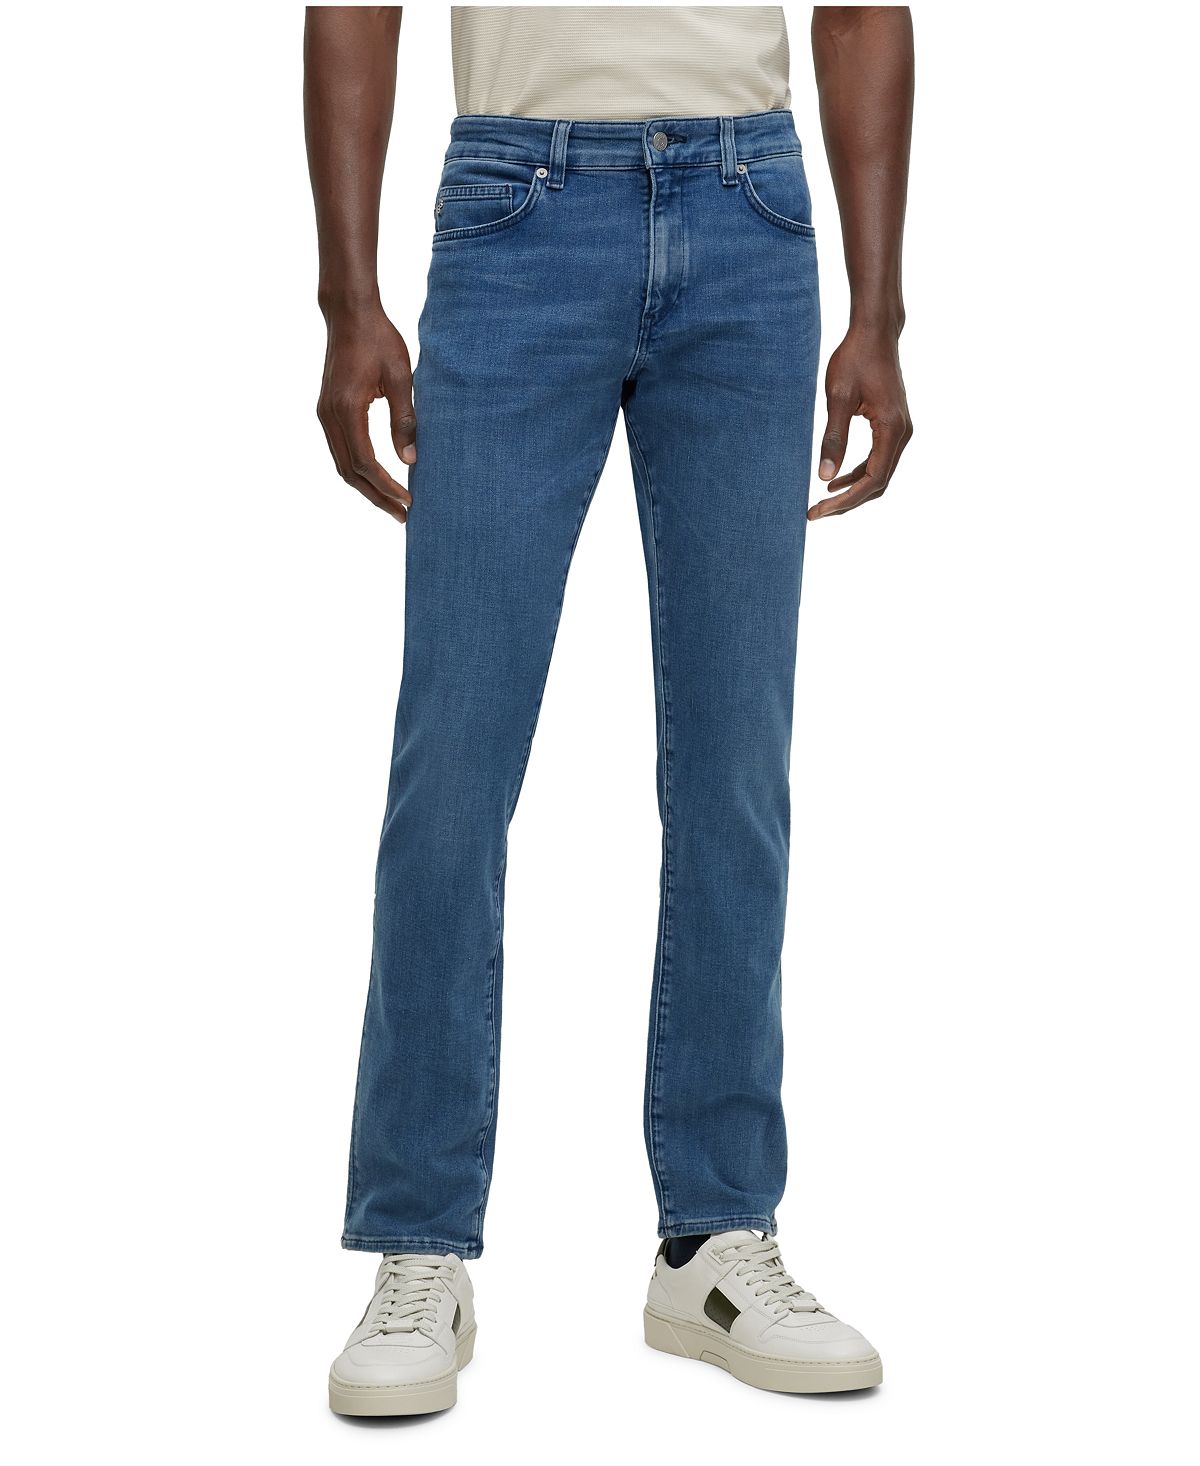 Мужские джинсы узкого кроя из итальянского денима Hugo Boss джинсы мужские стрейчевые облегающие байкерские облегающие брюки из денима с поцарапанной молнией повседневные джинсы в стиле хип хоп 4 ц